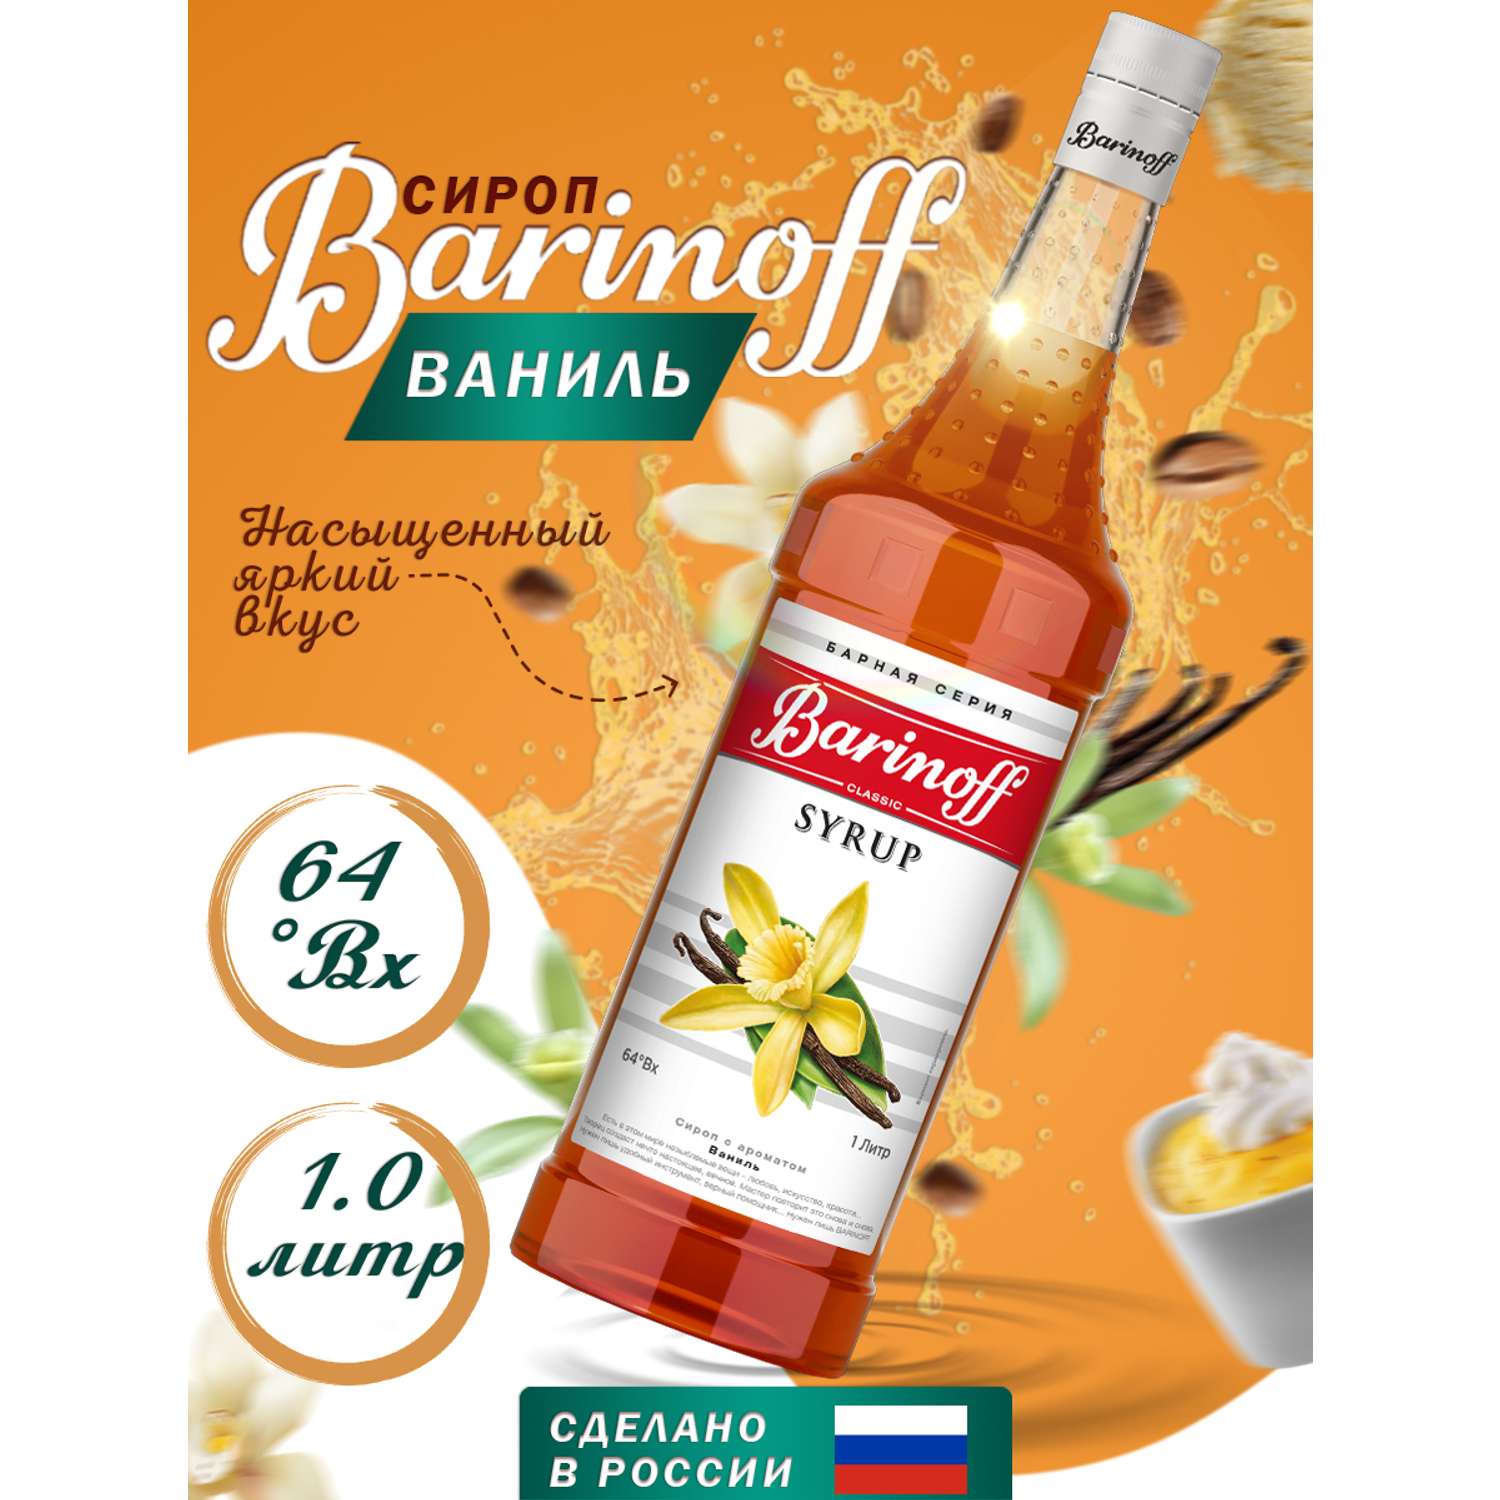 Сироп Barinoff Ваниль для кофе и коктейлей 1л - фото 1